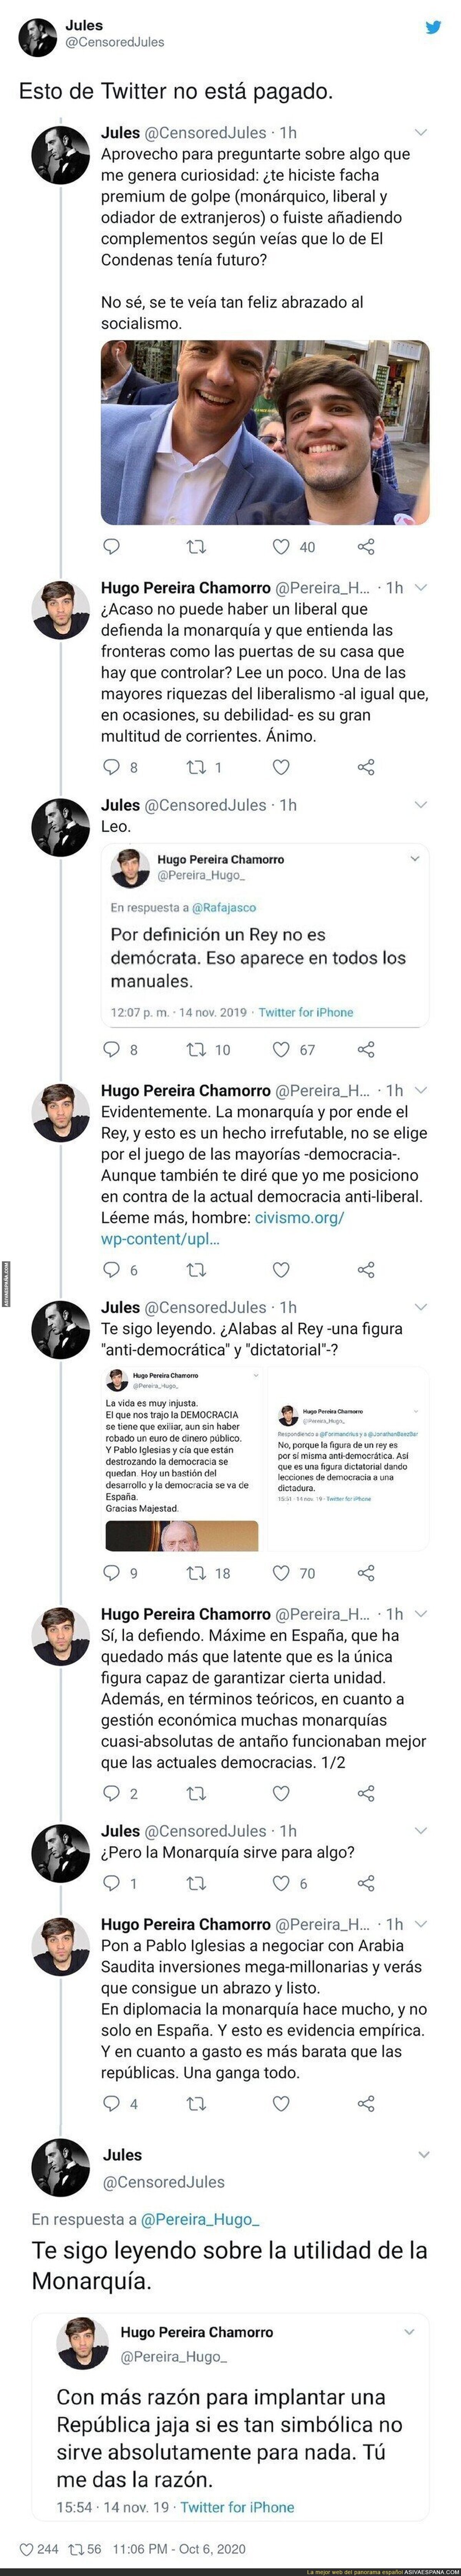 Este es el nivel de Hugo Pereira, el que antes era simpatizante del PSOE y ahora vota a VOX